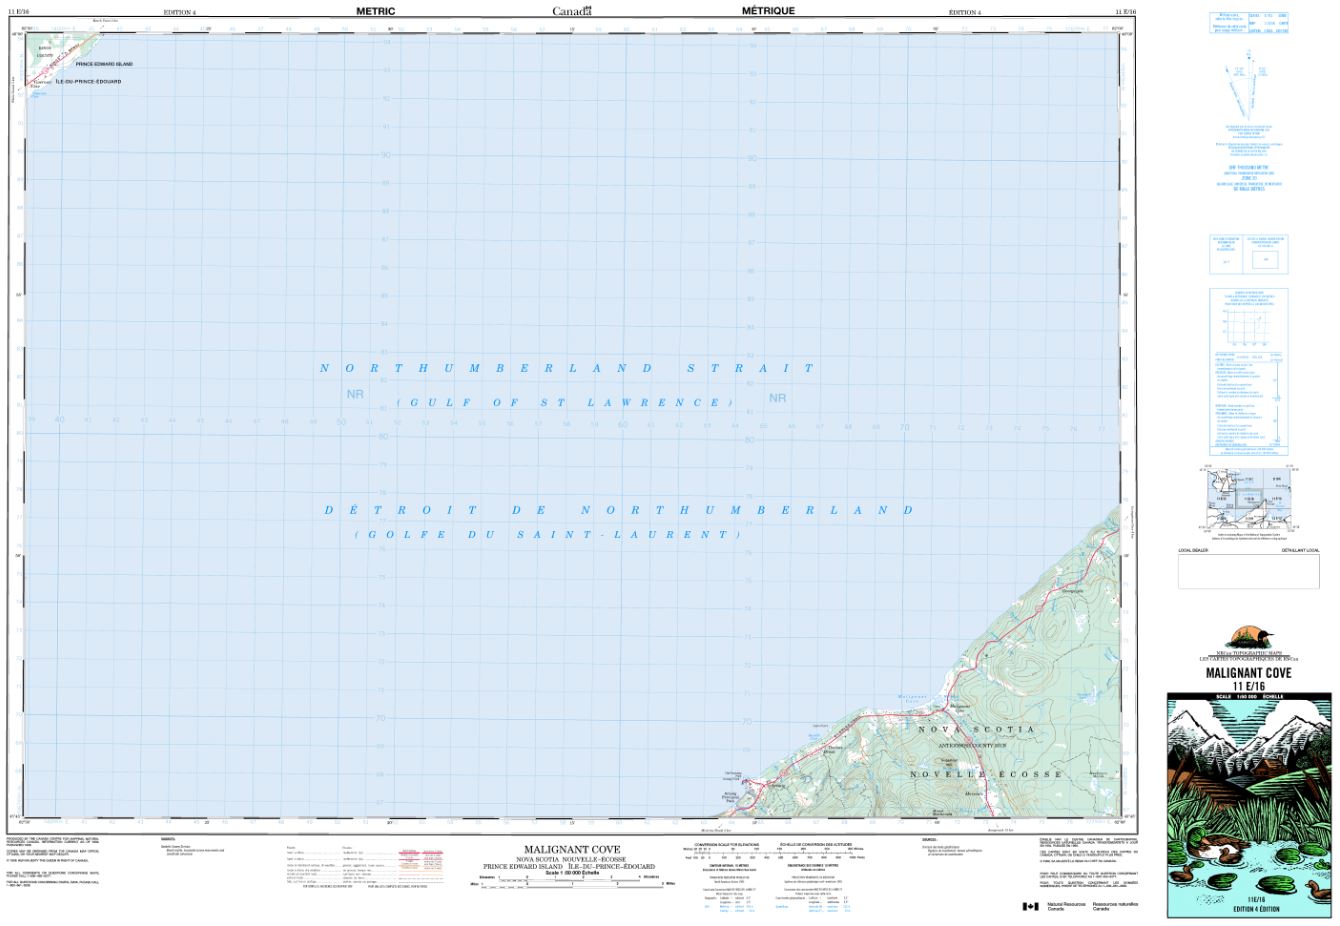 11E/16 Malignant Cove Topographic Map Nova Scotia